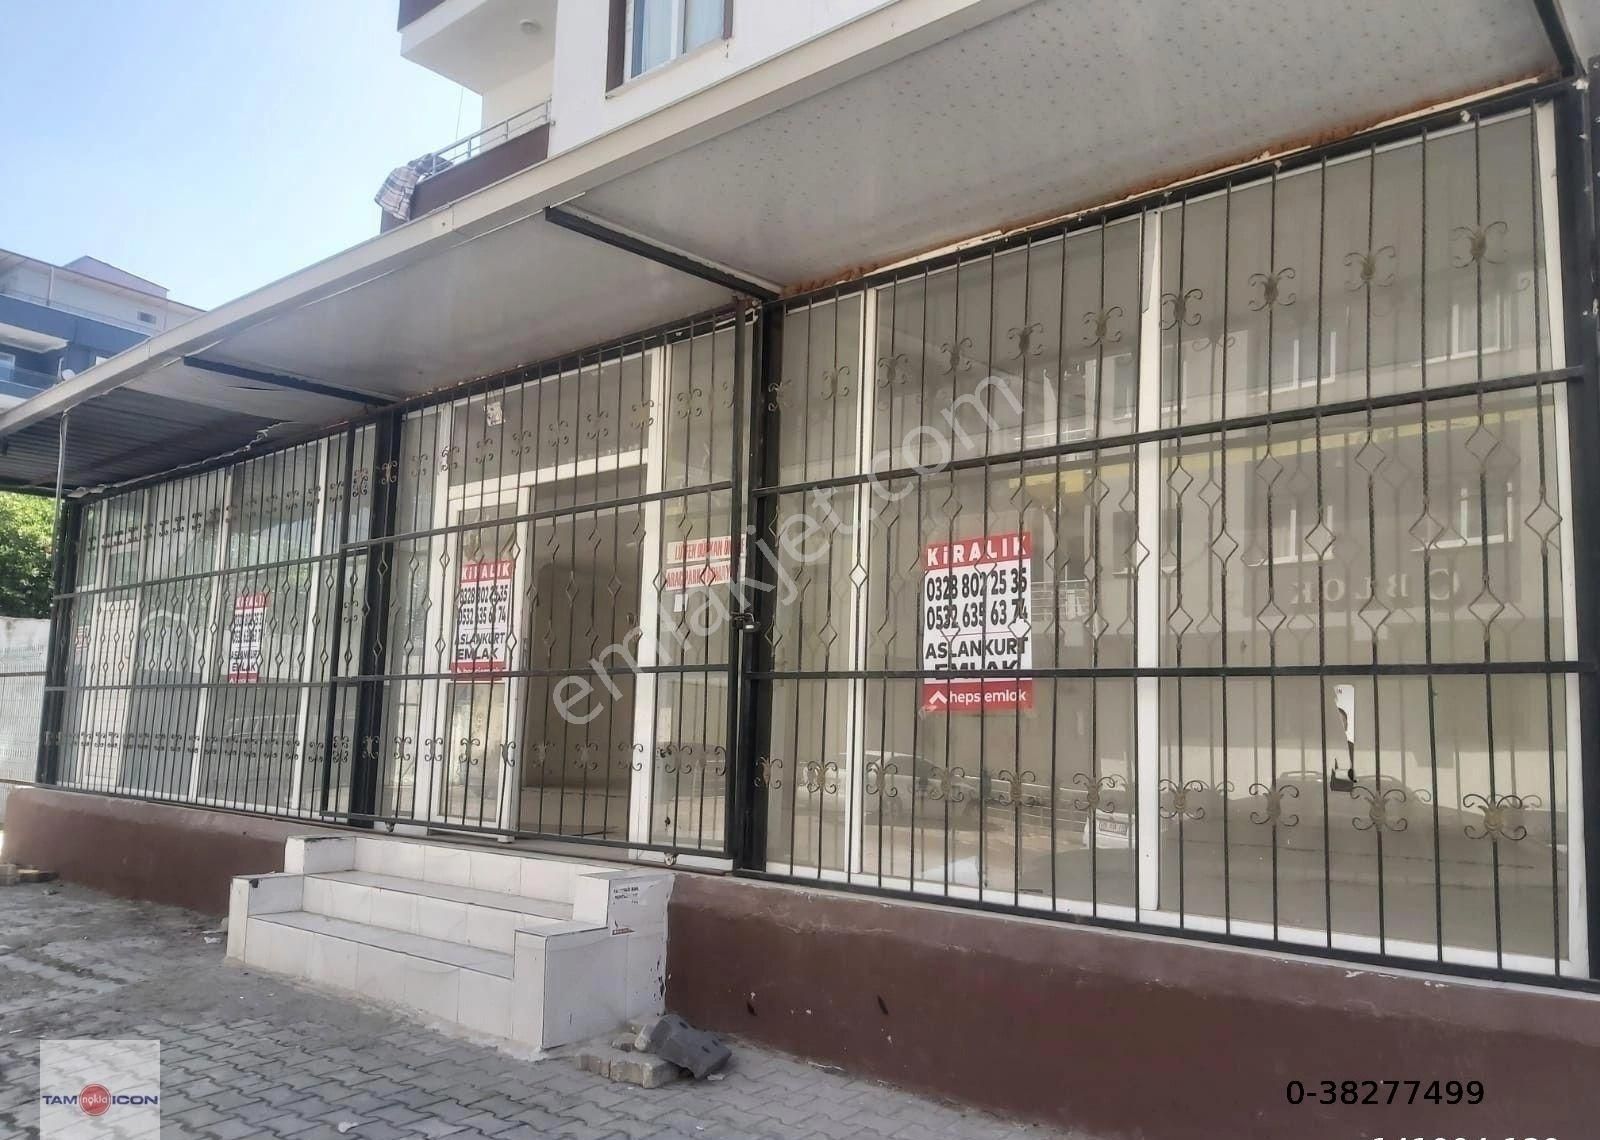 Osmaniye Merkez Fakıuşağı Kiralık Dükkan & Mağaza FAKIUŞAĞINDA KİRALIK DÜKKAN